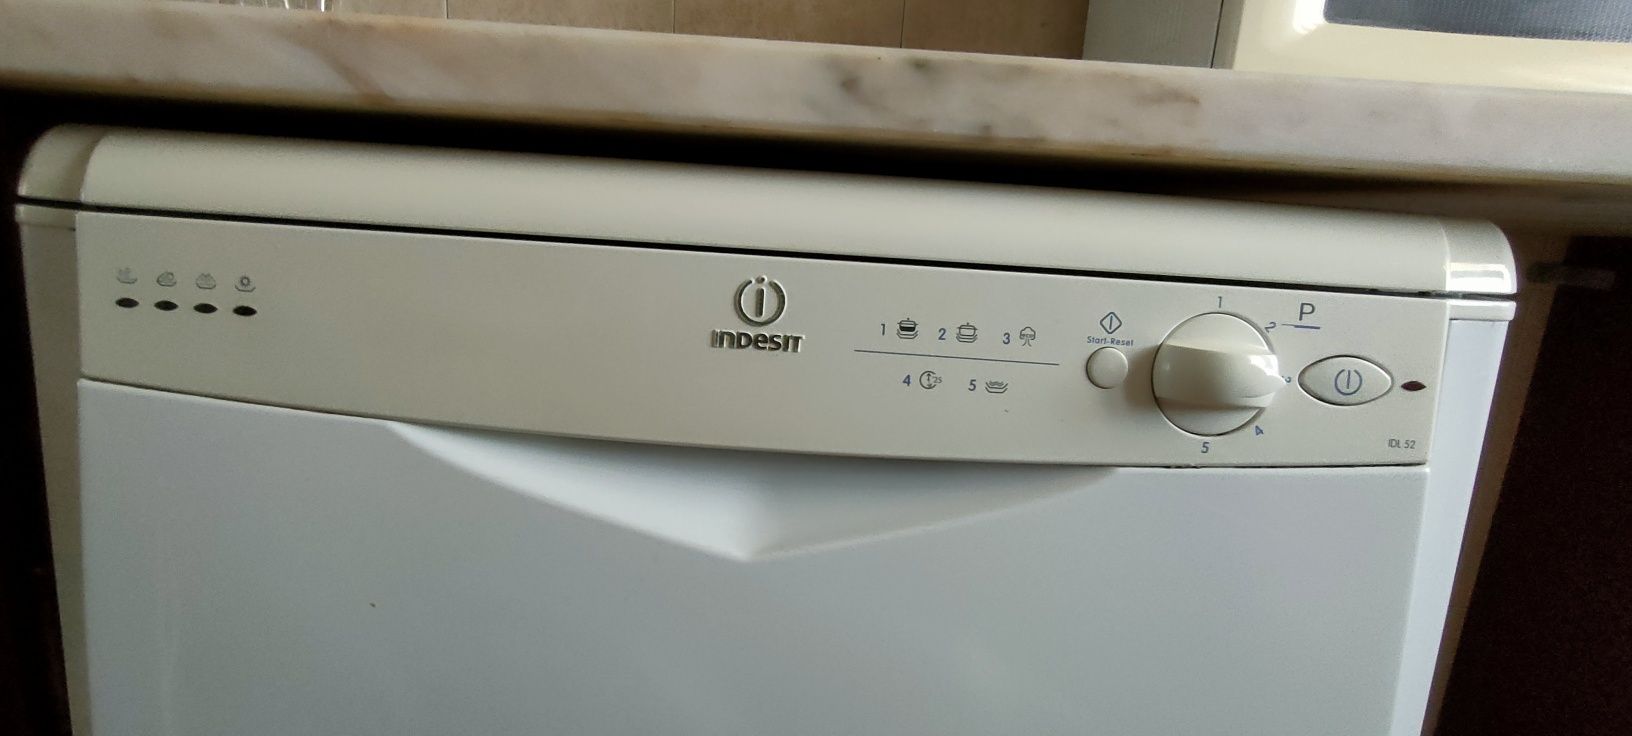 Máquina de lavar loiça Indesit IDL-52